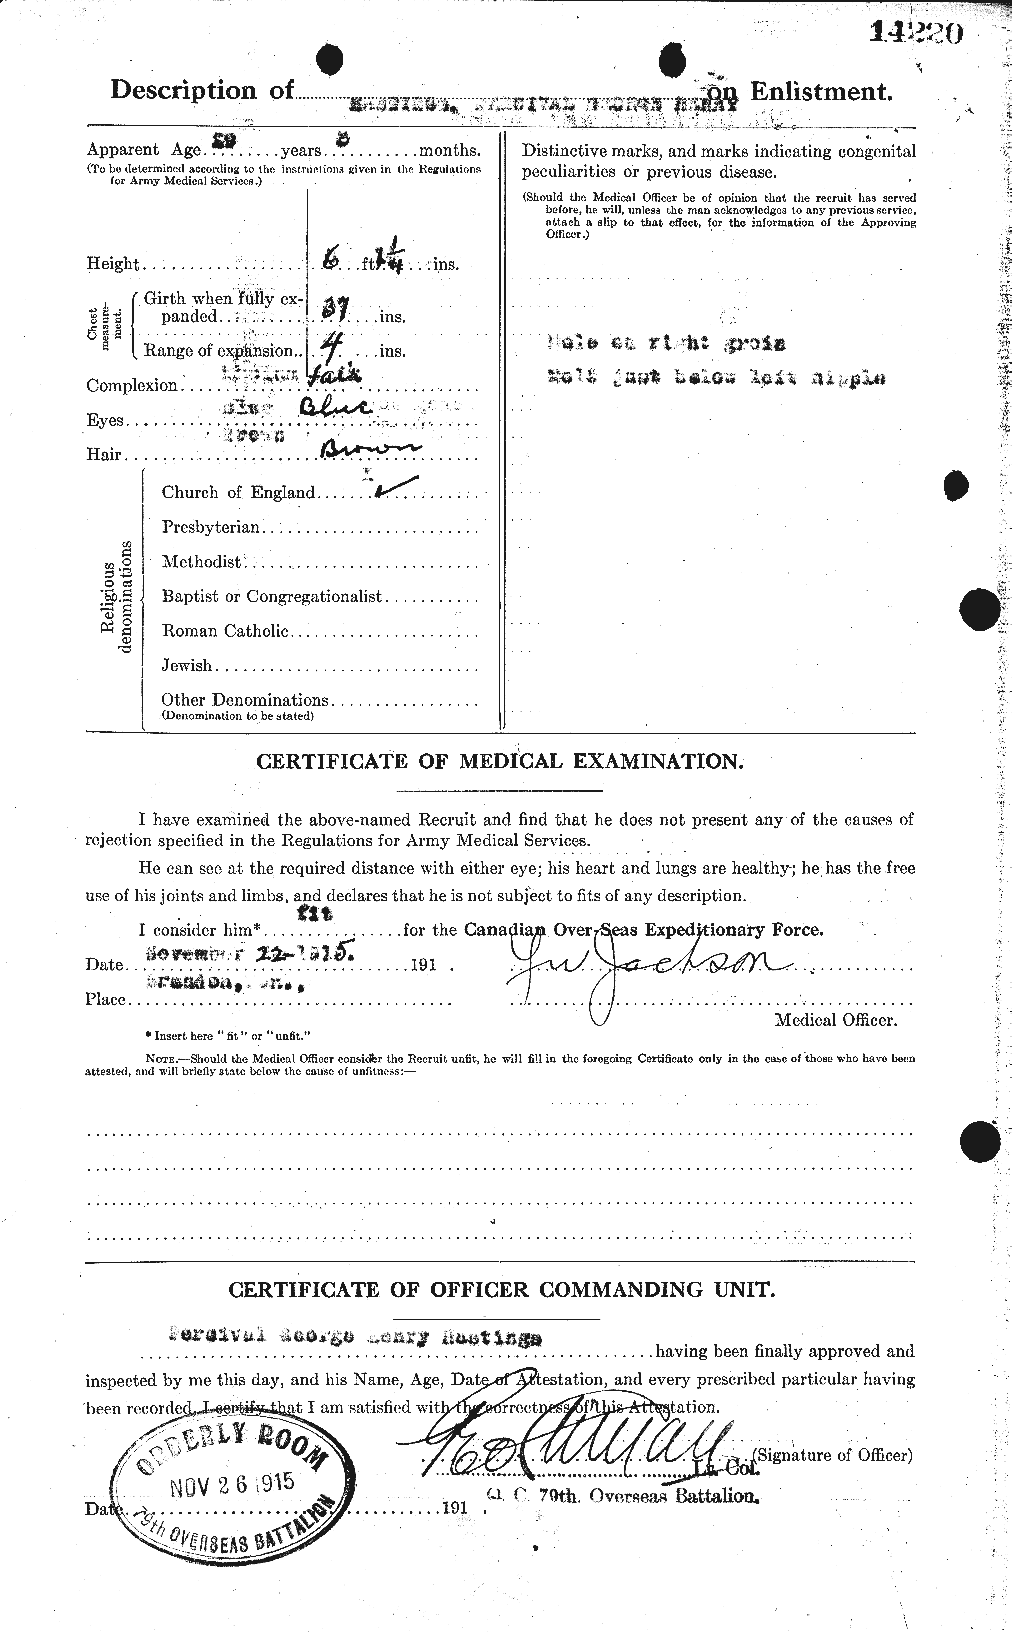 Dossiers du Personnel de la Première Guerre mondiale - CEC 388239b